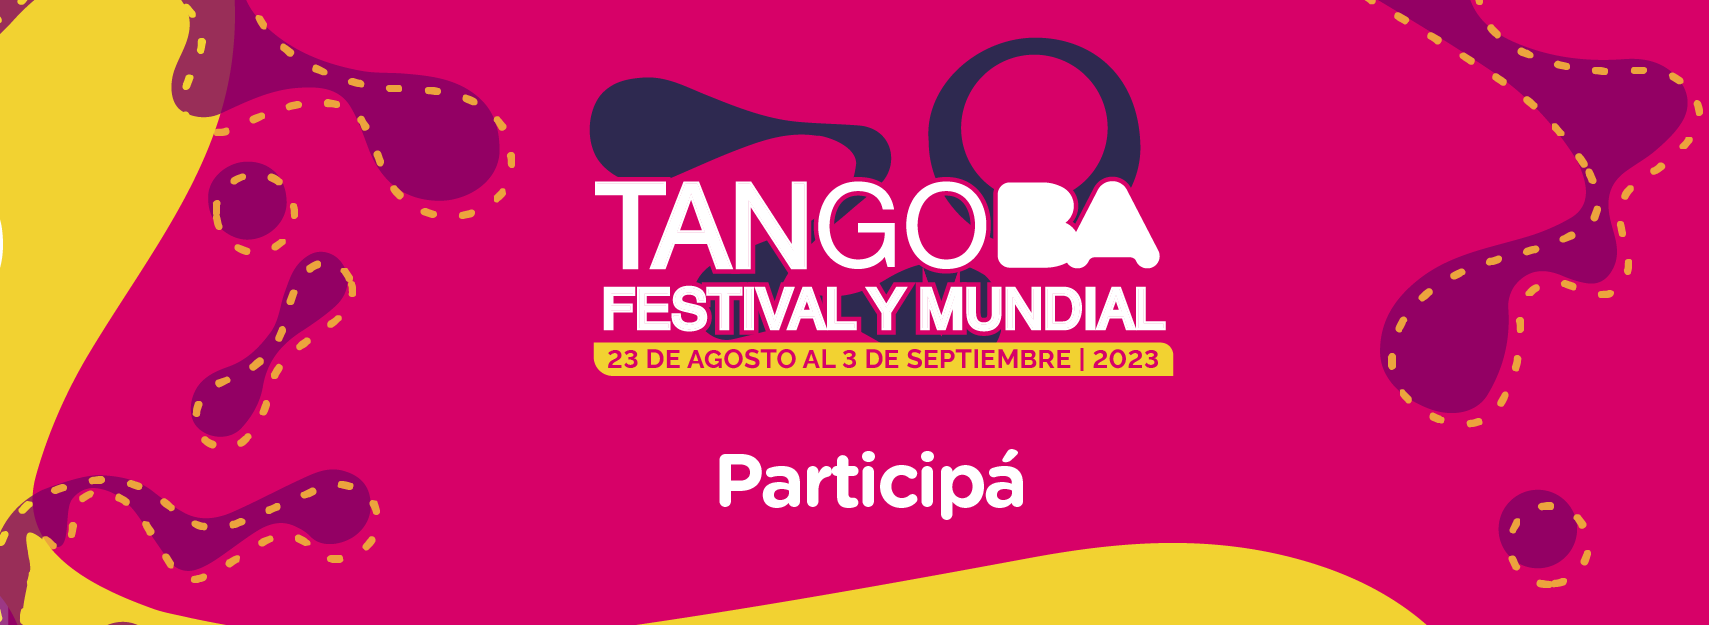 Tango BA 2023